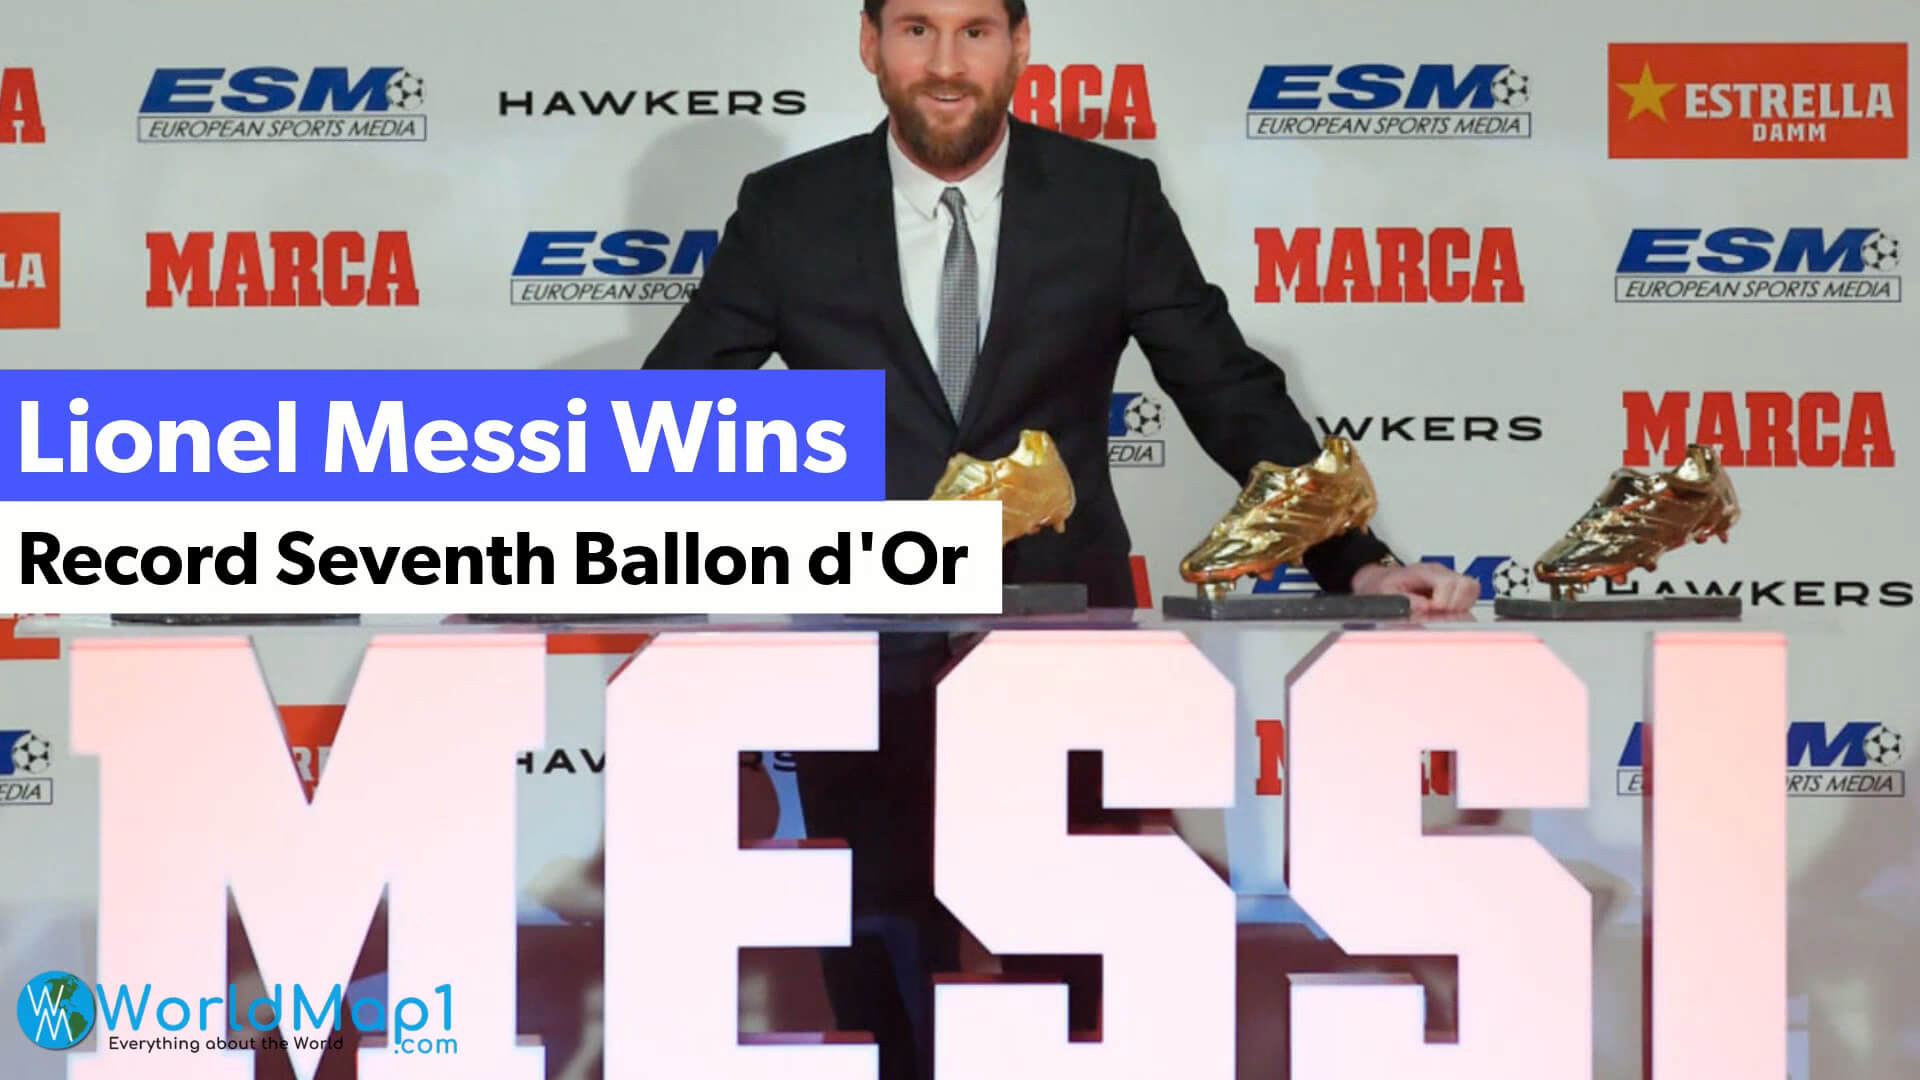 Lionel Messi Wins Record 7th Ballon d'Or